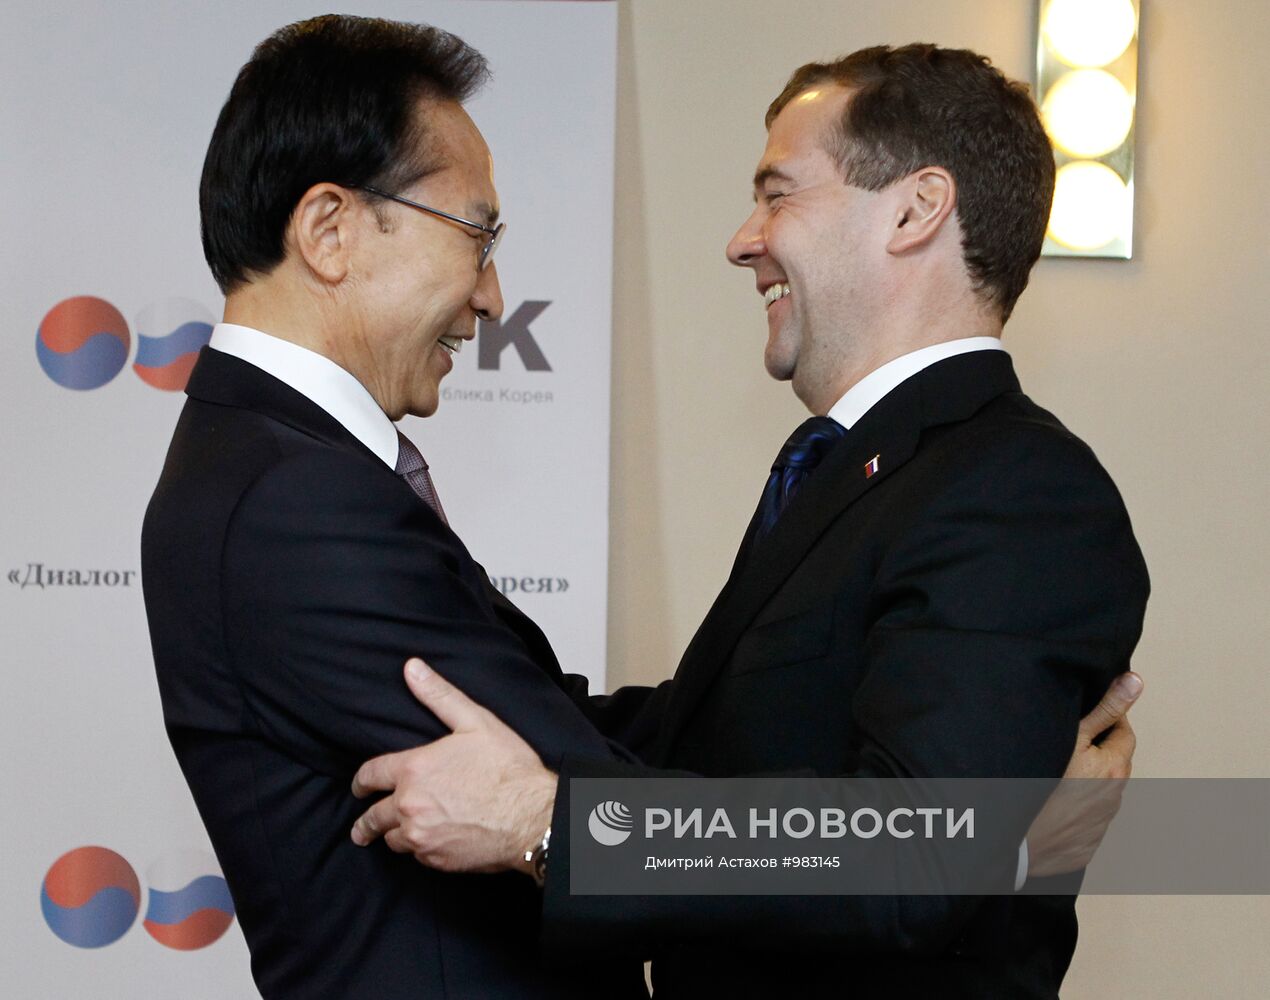 Форум "Диалог Россия - Республика Корея" в Санкт-Петербурге